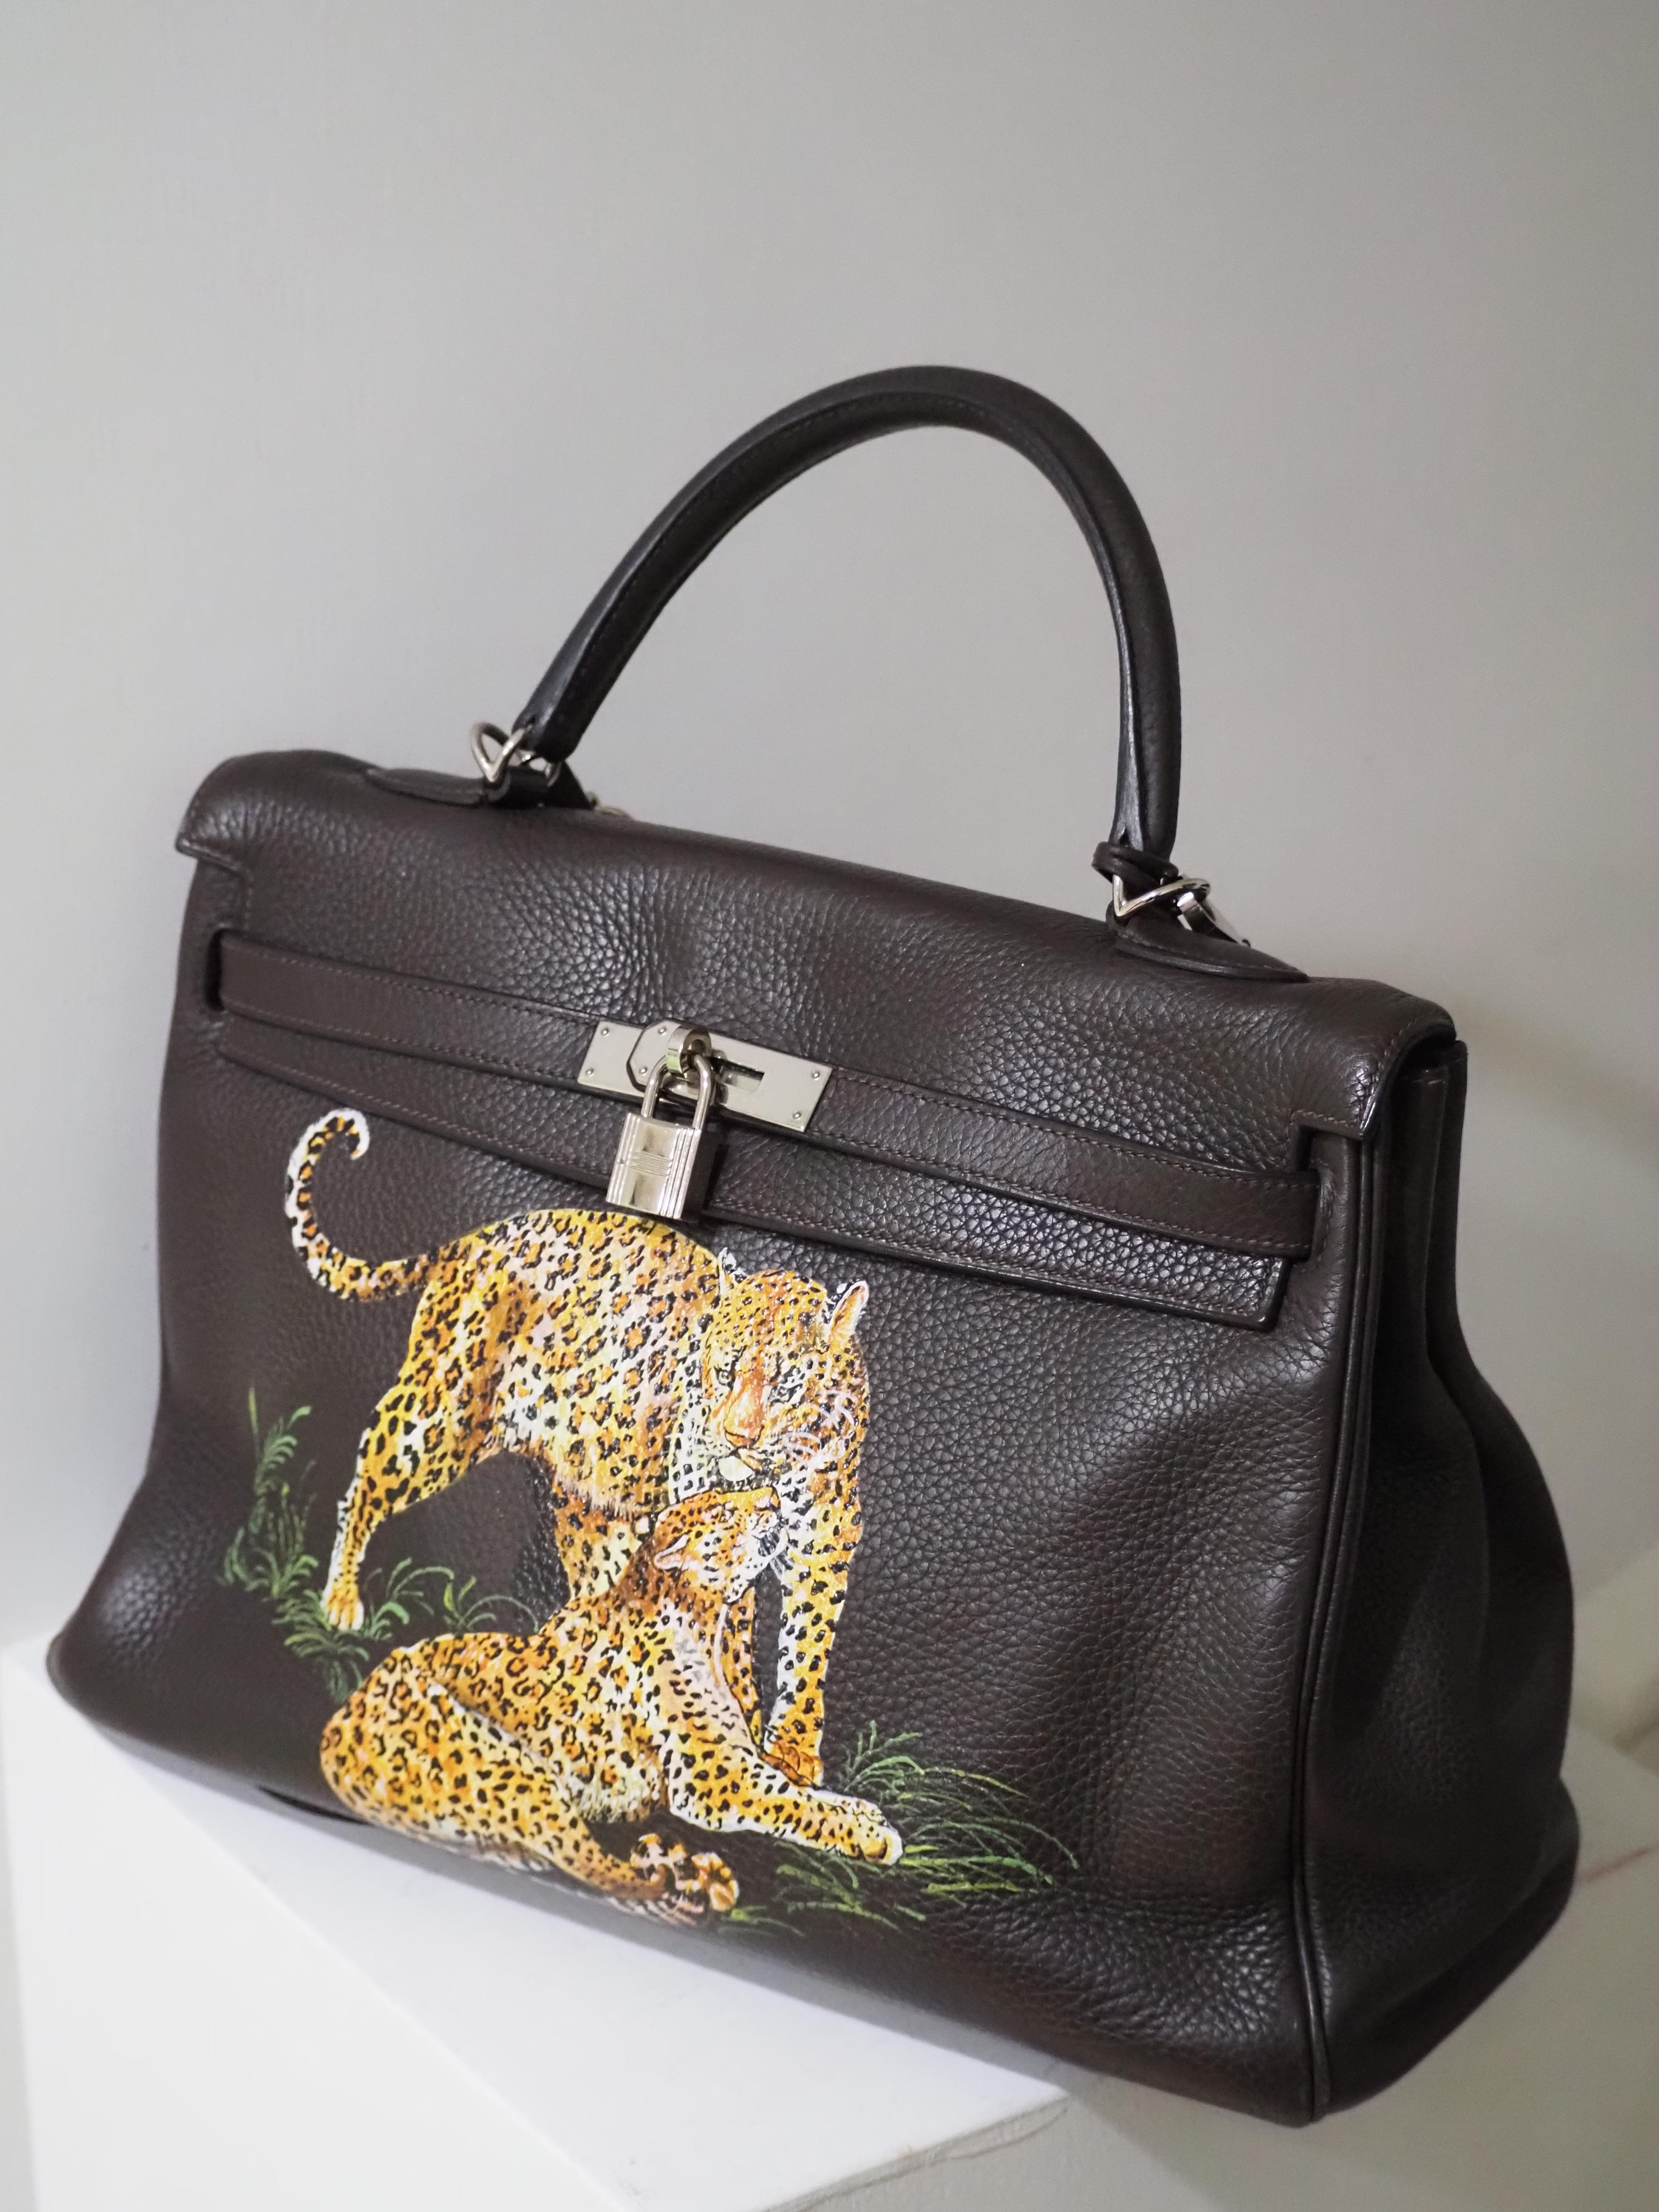 Hermès 35 Brown leather handpainted handbag shoulder bag 8